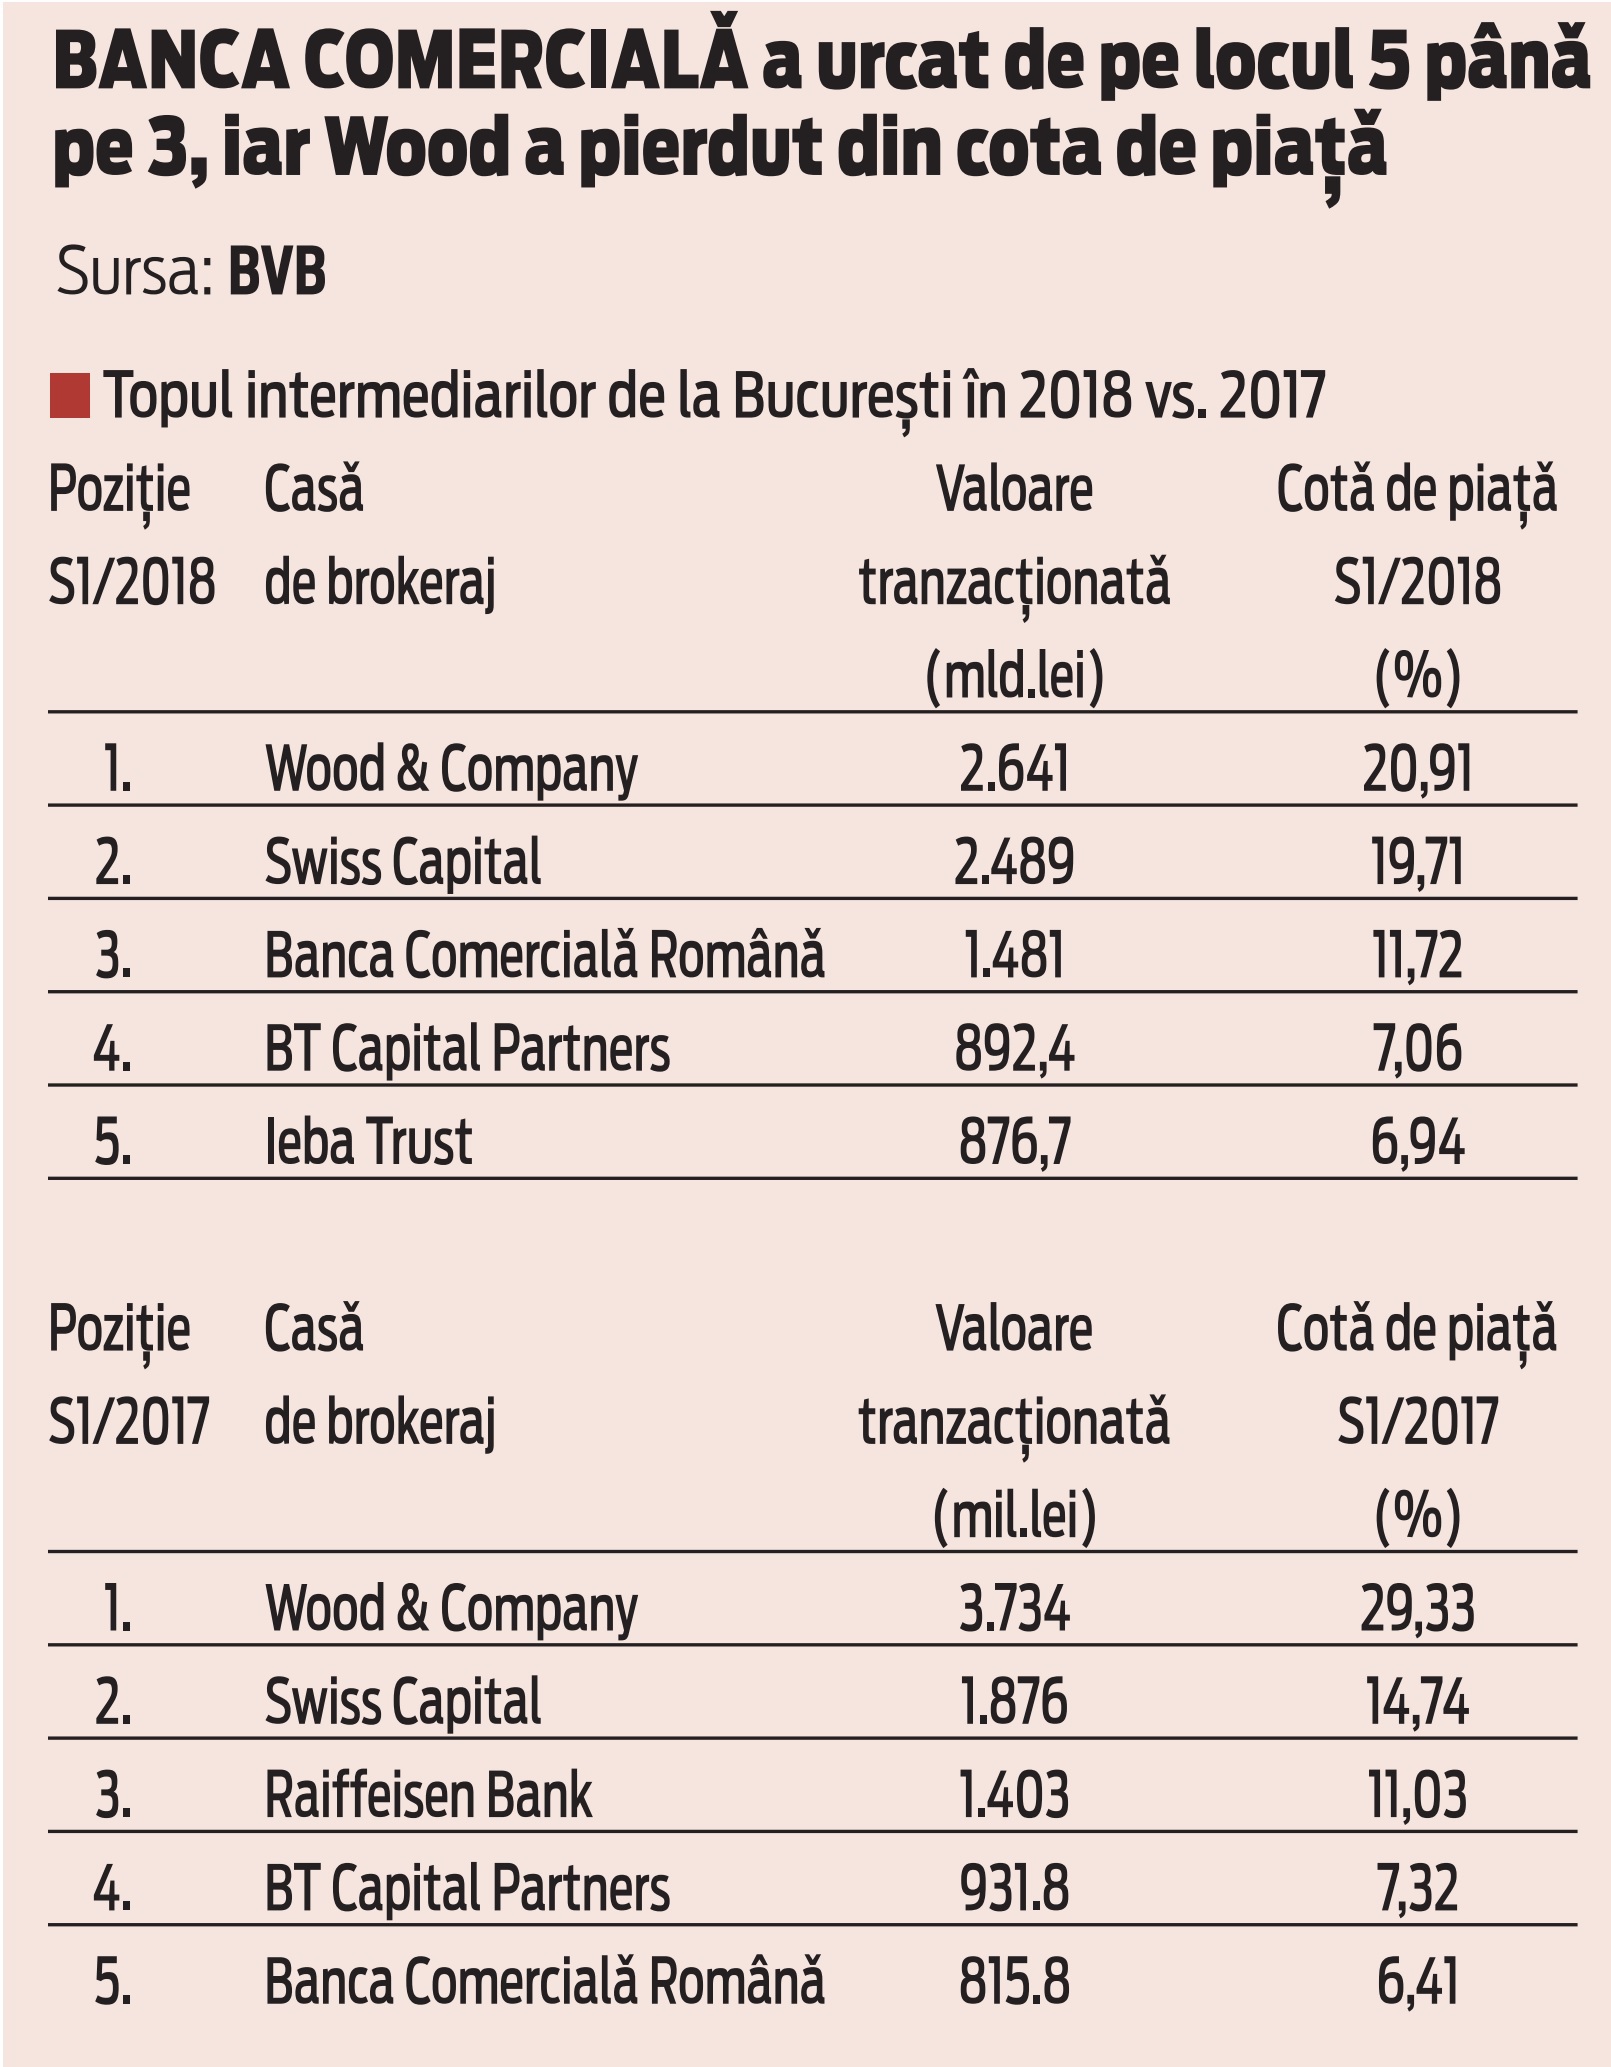 BCR a reuşit să avanseze şi să intre în topul celor mai mari trei intermediari de la Bursa de Valori Bucureşti